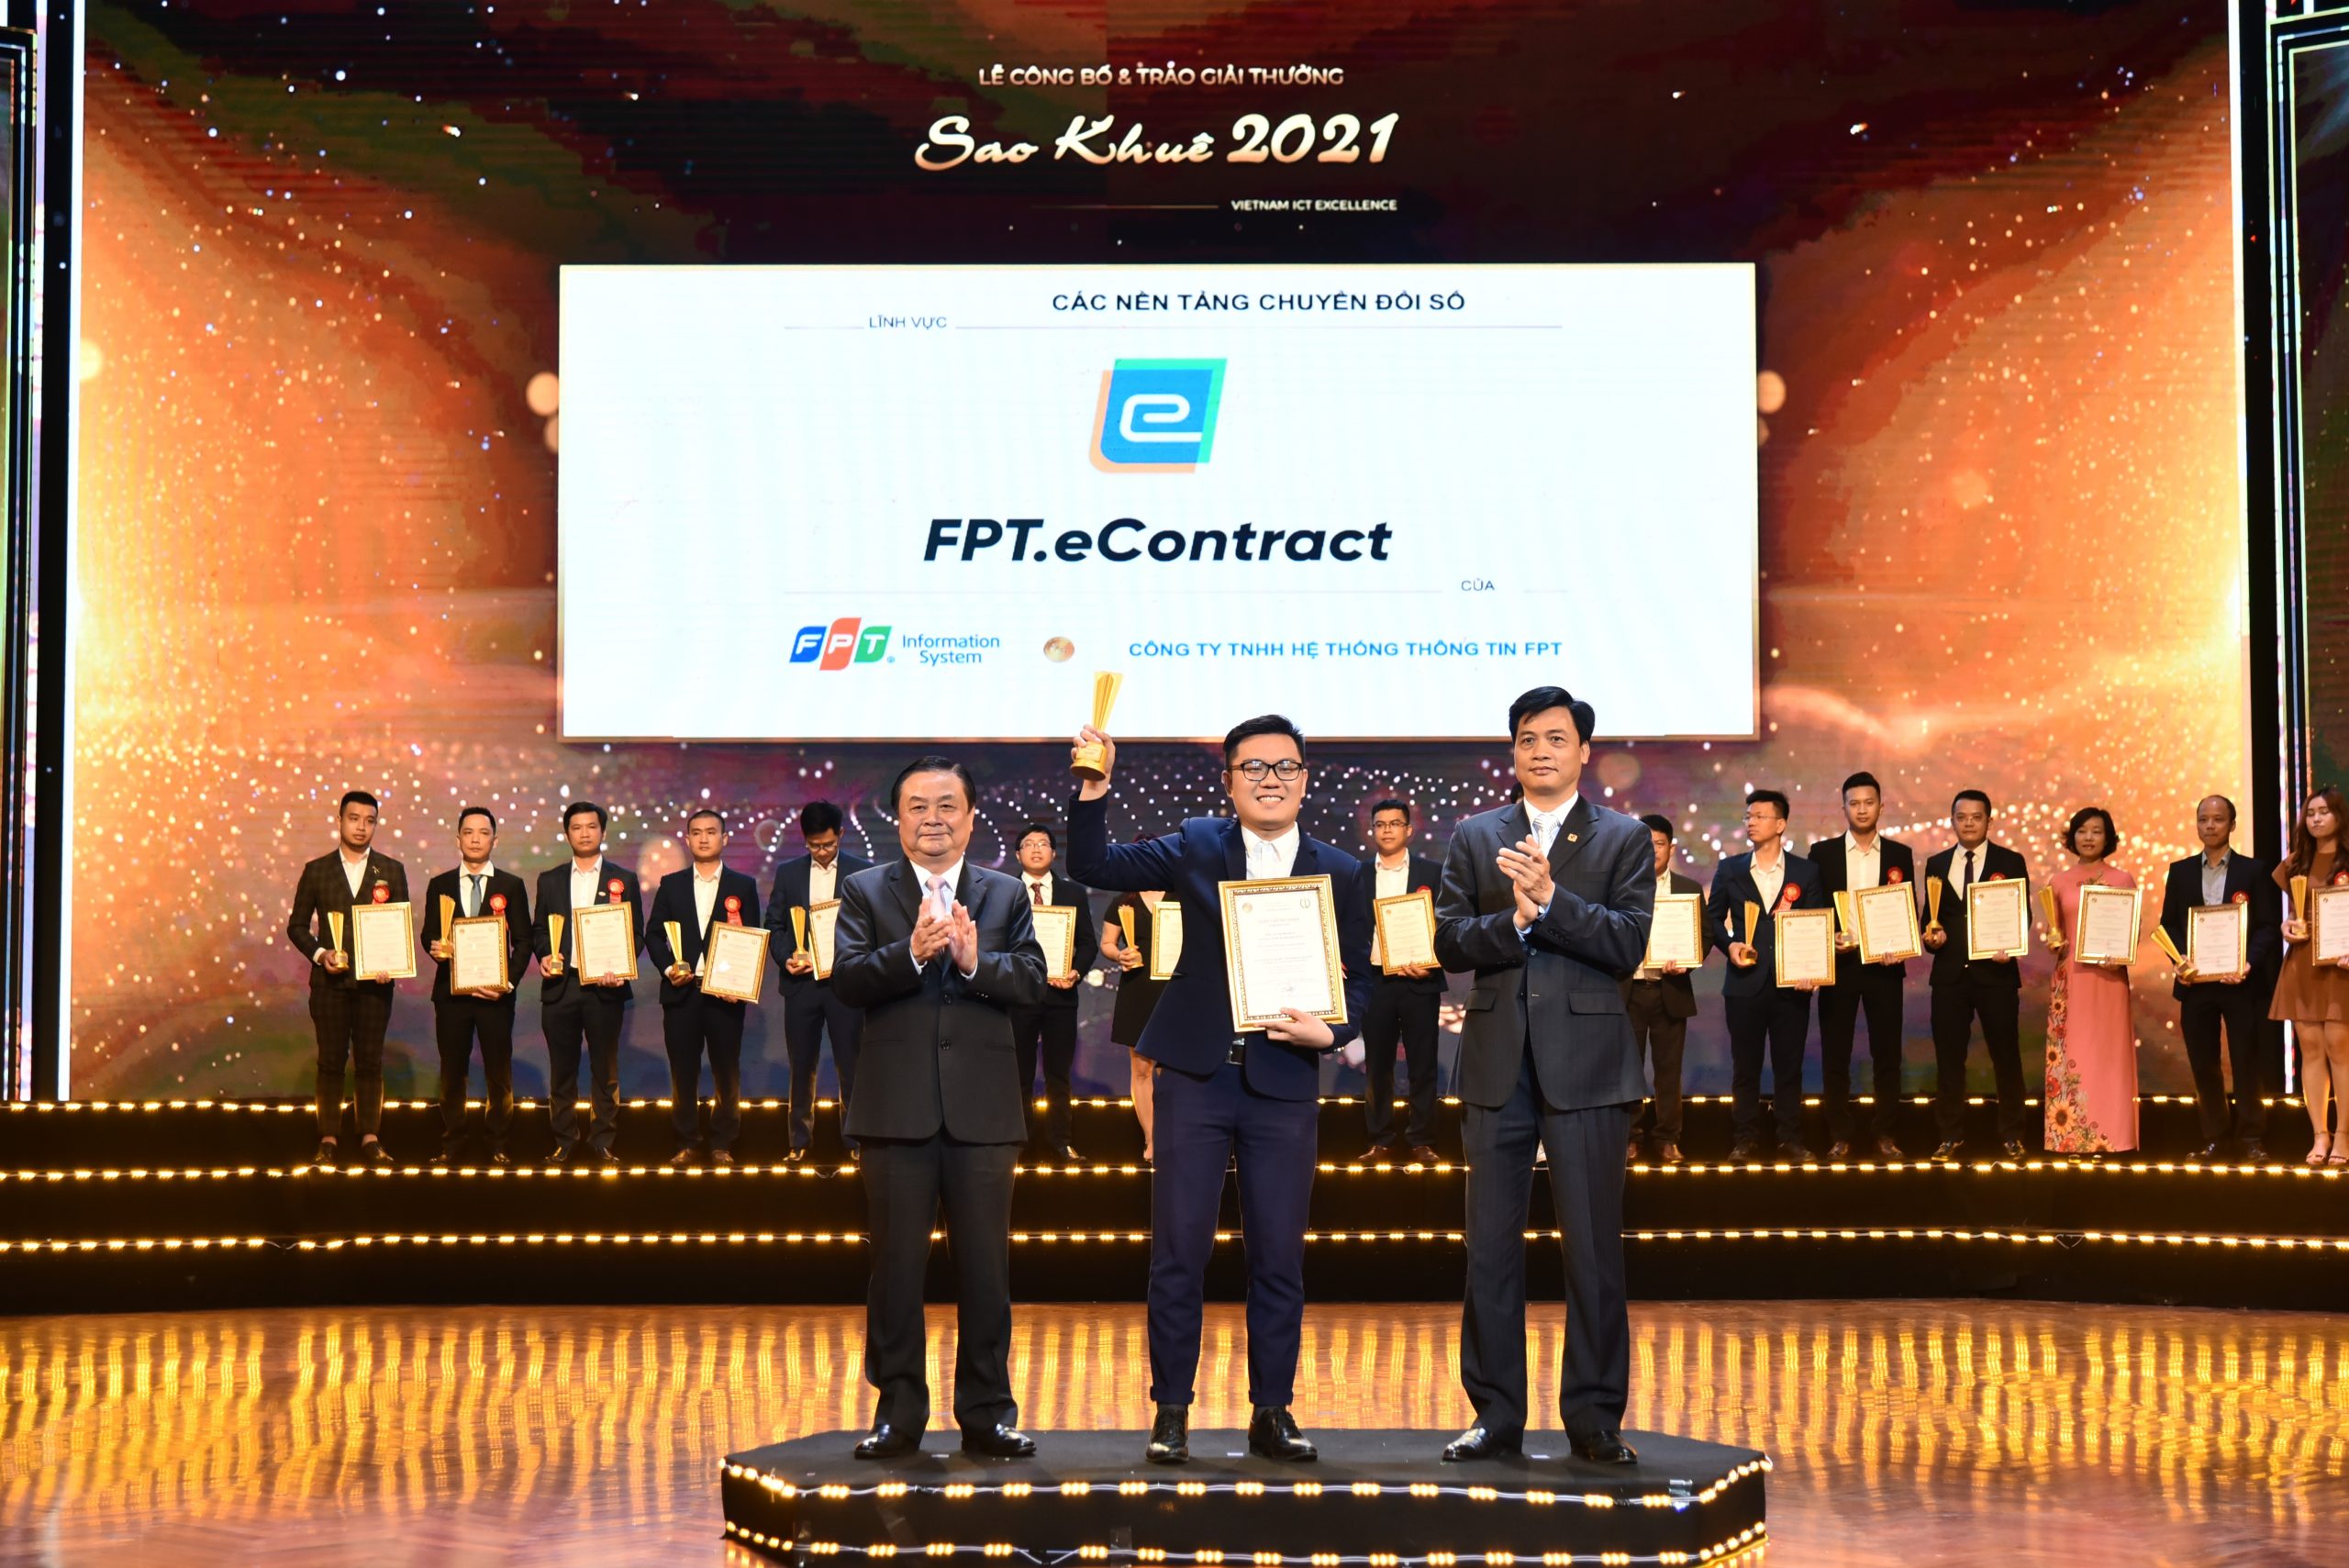 Phần mềm hợp đồng điện tử – FPT.eContract đạt Giải thưởng Sao Khuê 2021